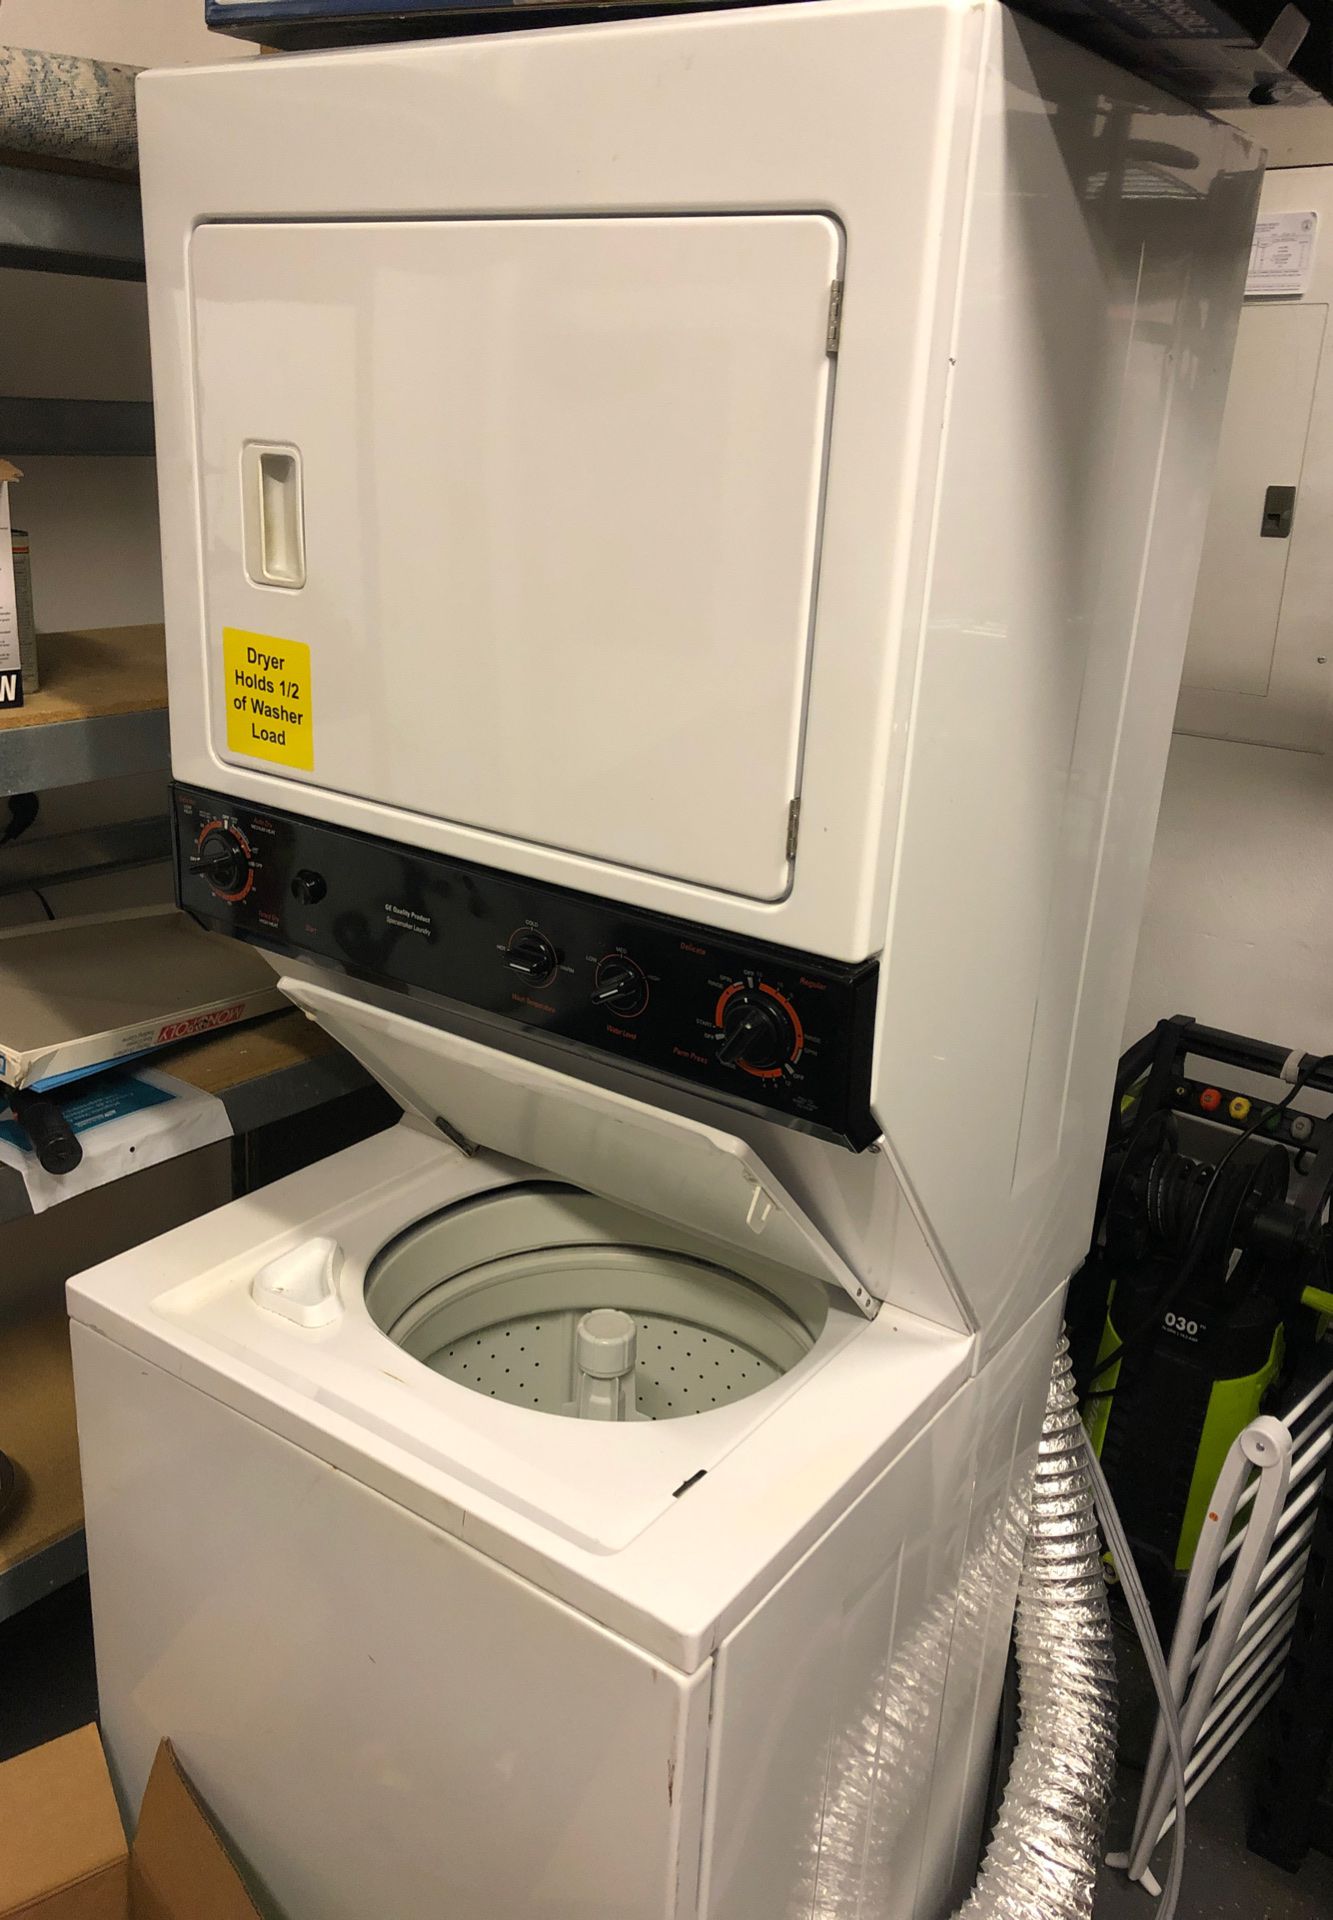 Single unit washer/dryer